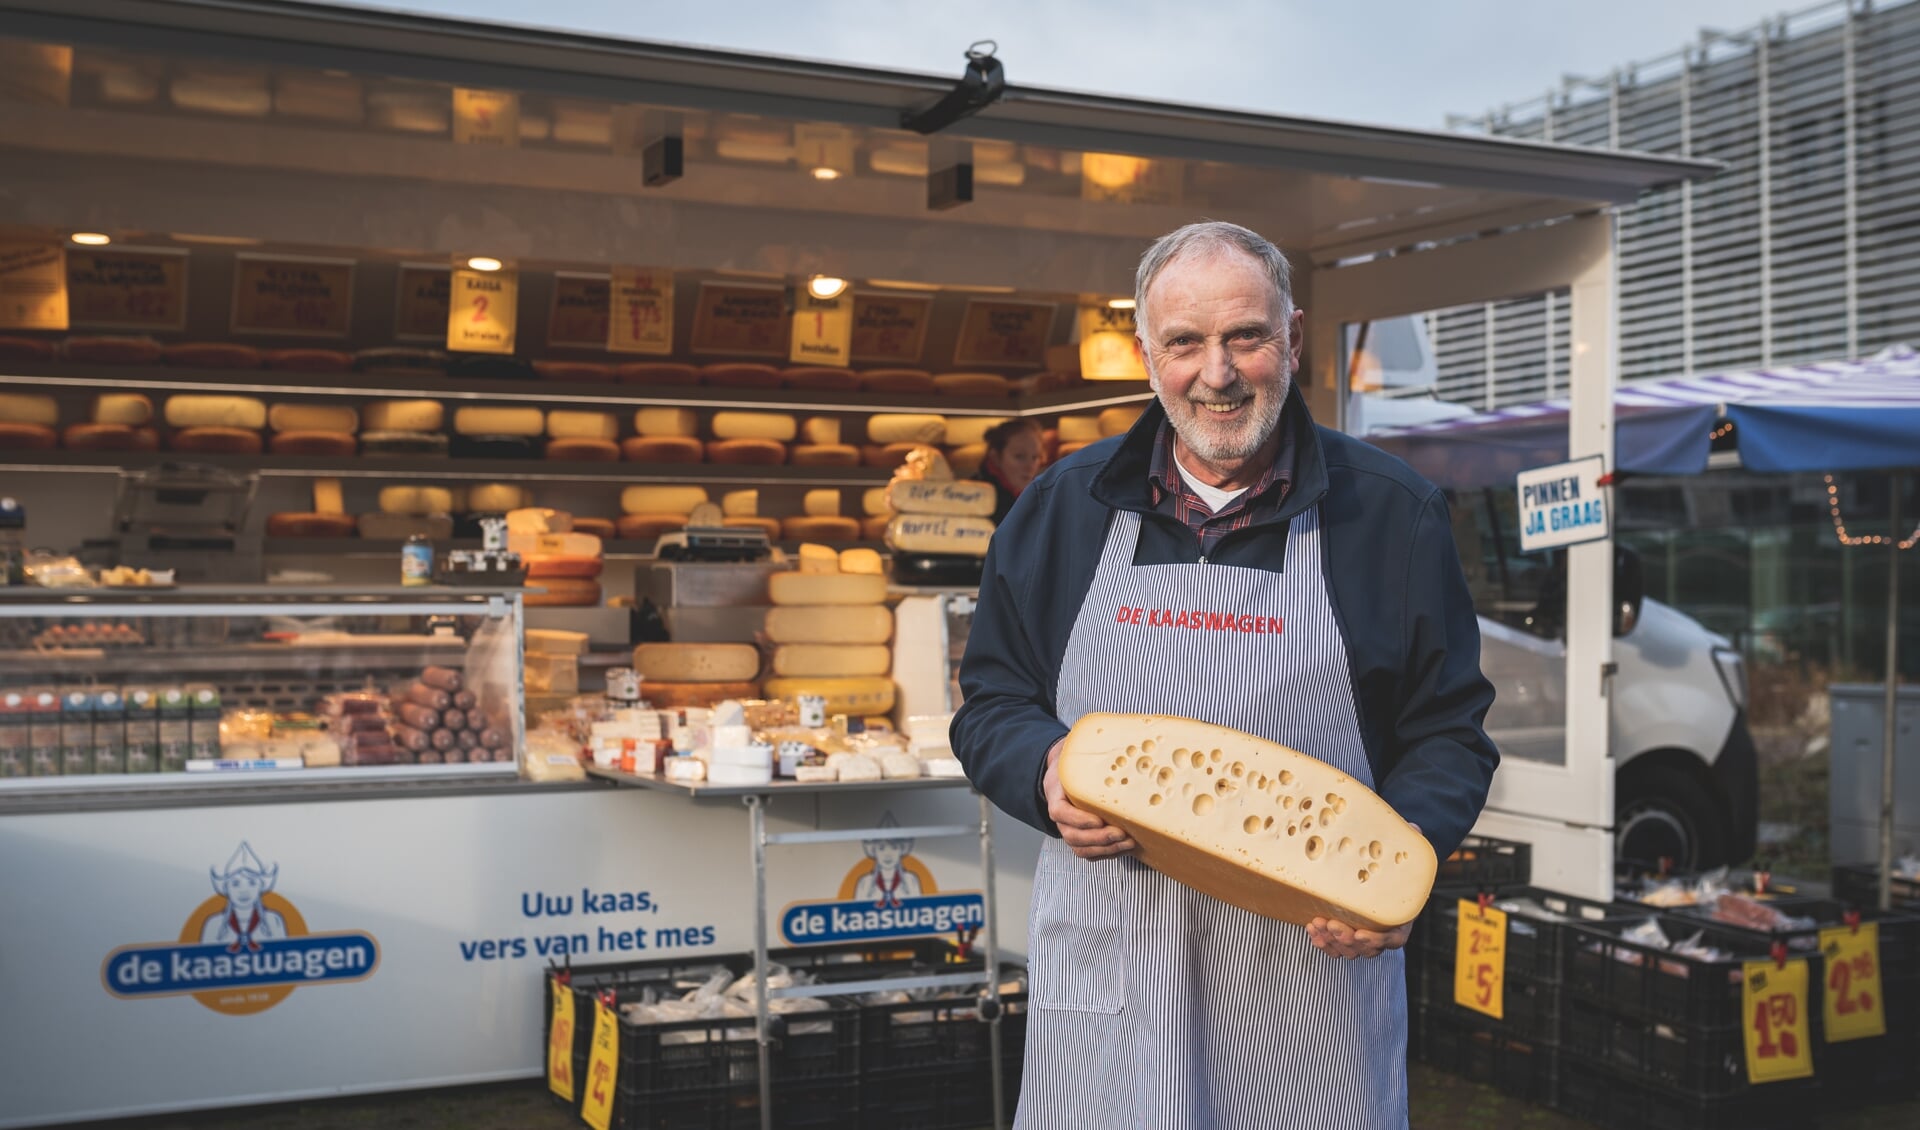 Kaasboer Willem Bakker staat deze week 50 jaar op de markt met kaas. 